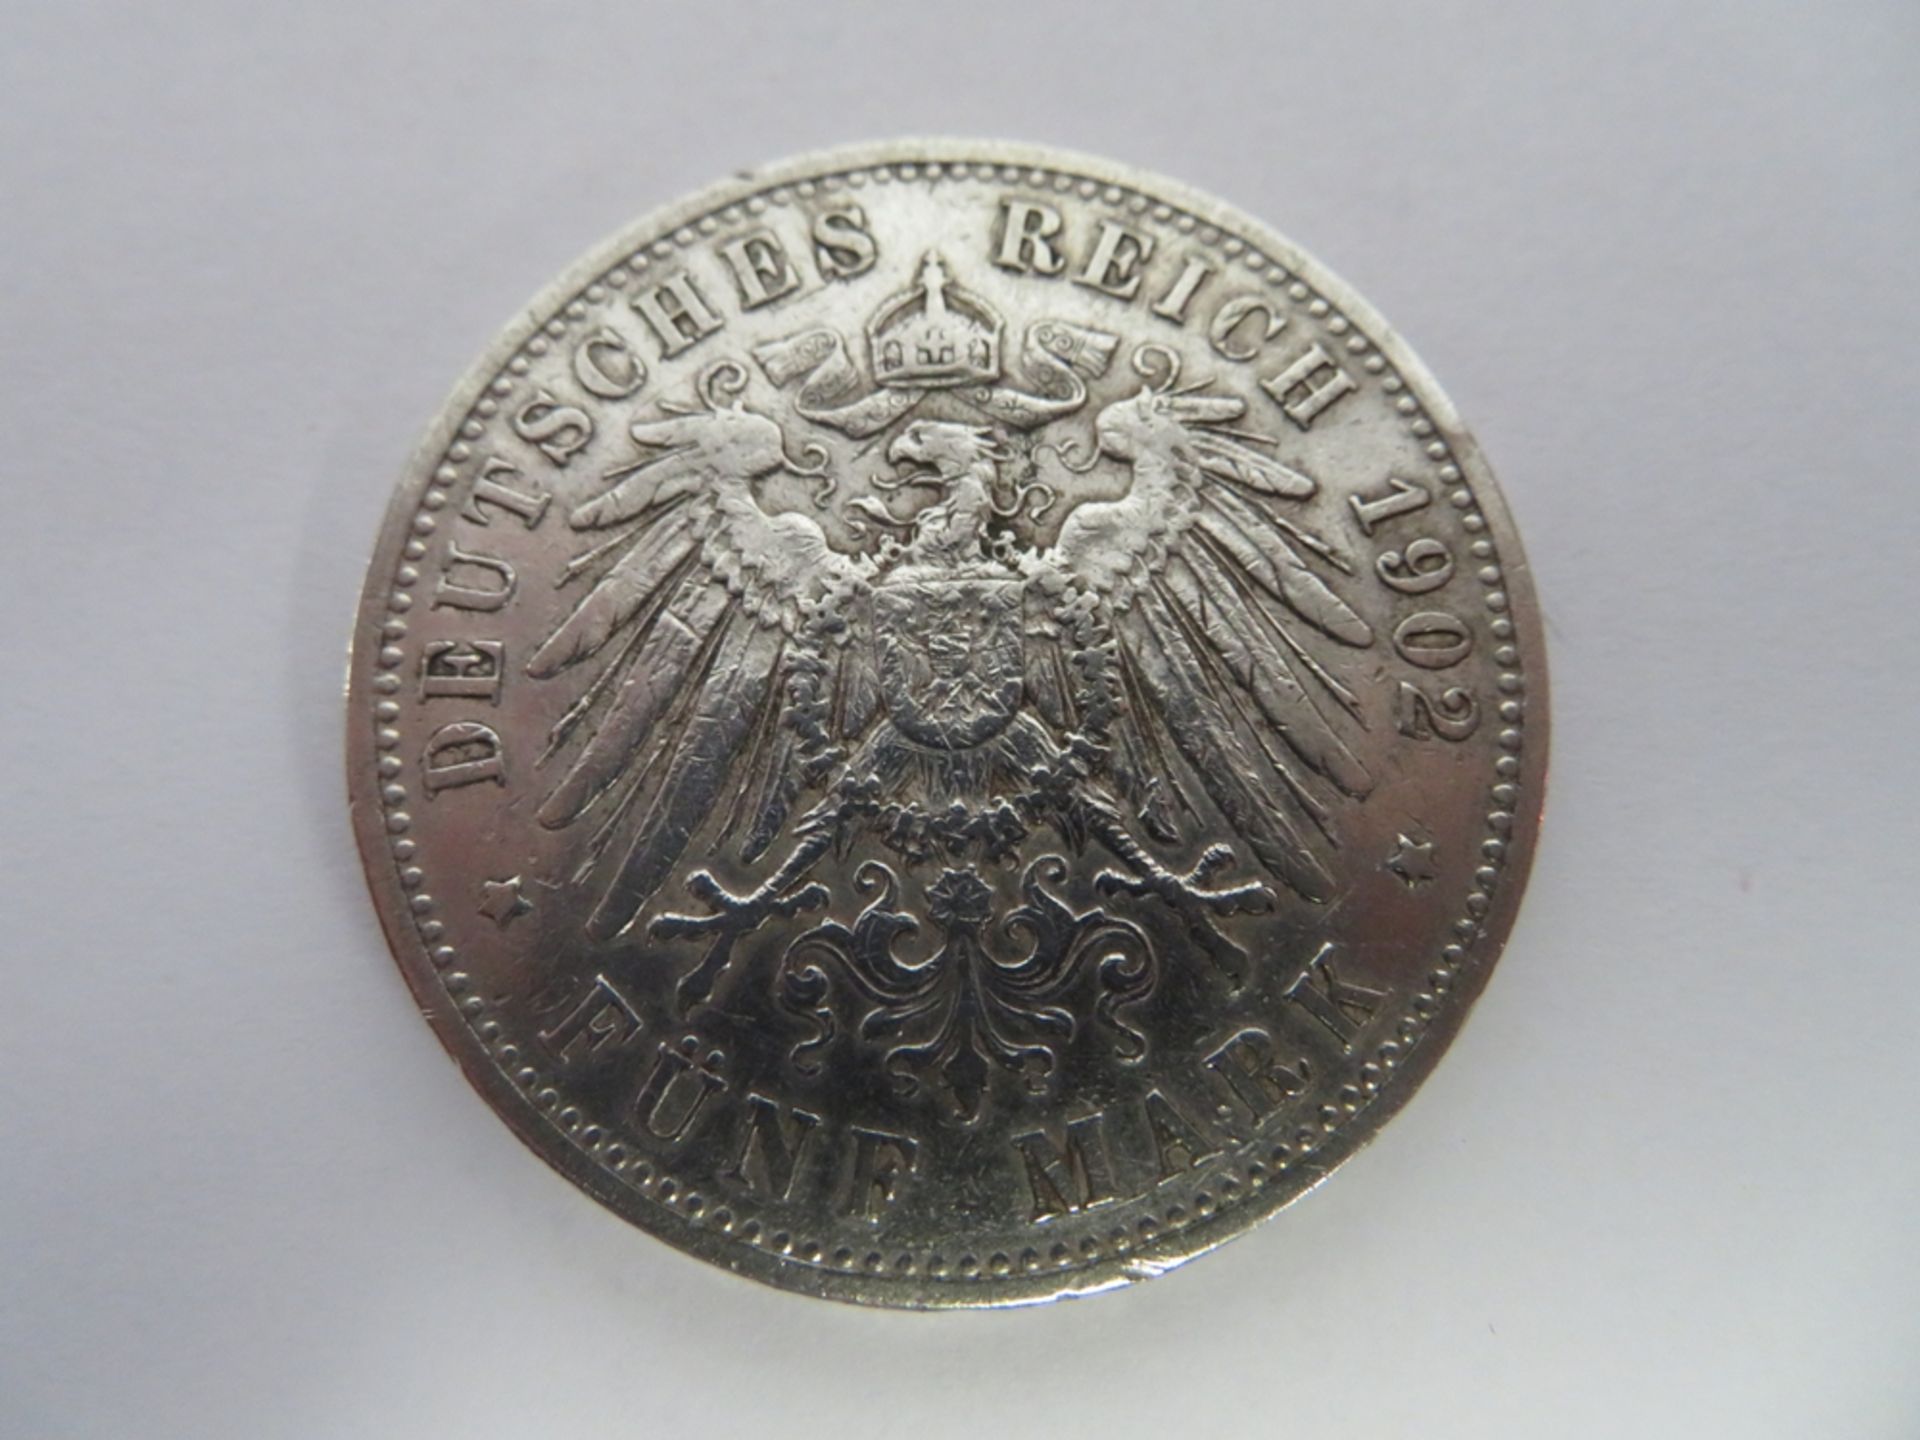 Silbermünze, 5 Mark, 1902 A, Wilhelm II. von Preußen, d 3,9 cm. - Image 2 of 2